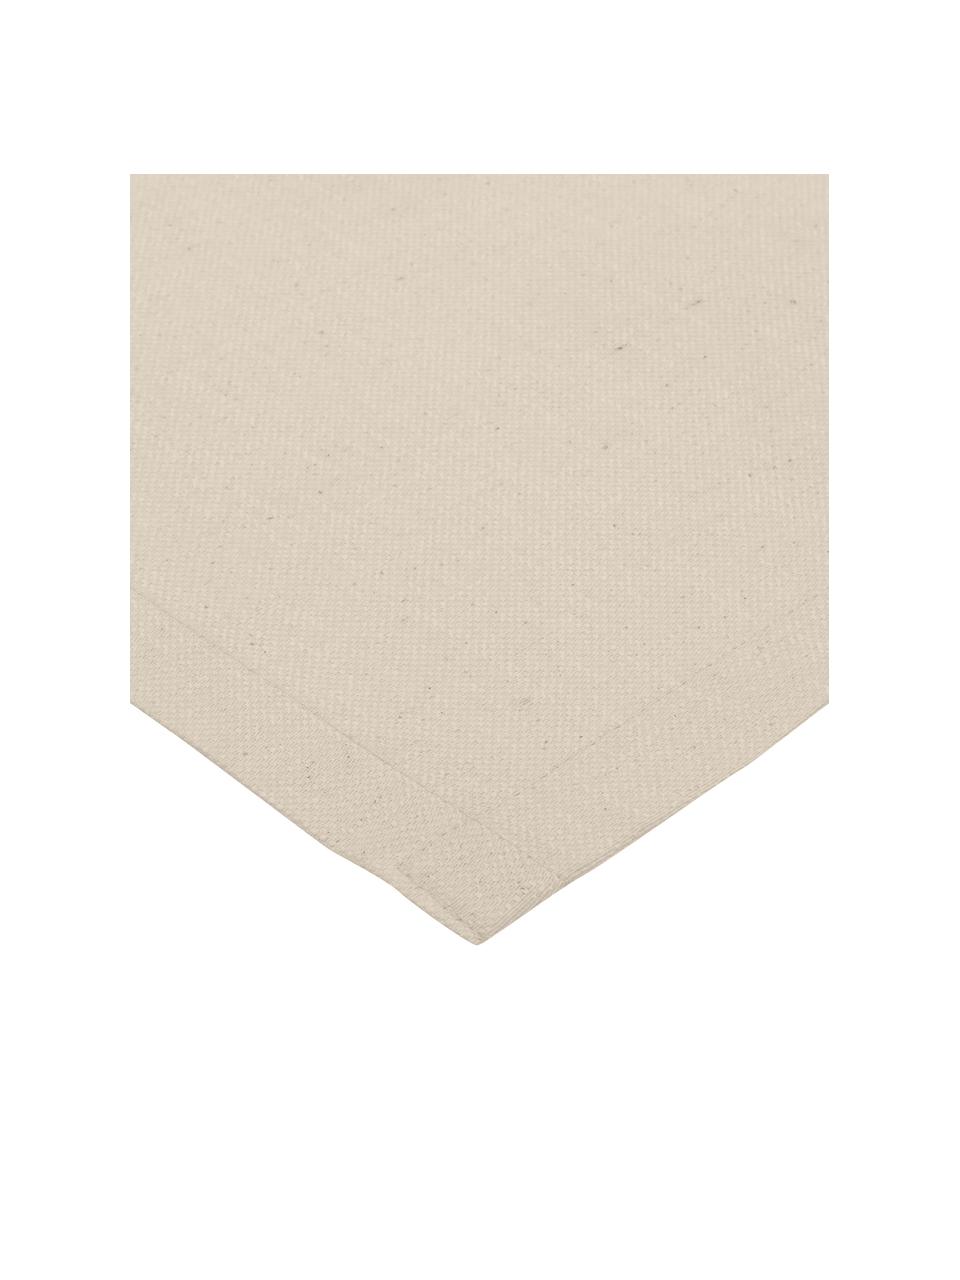 Tischläufer Riva aus Baumwollgemisch in Beige, 55% Baumwolle, 45% Polyester, Beige, B 40 x L 150 cm